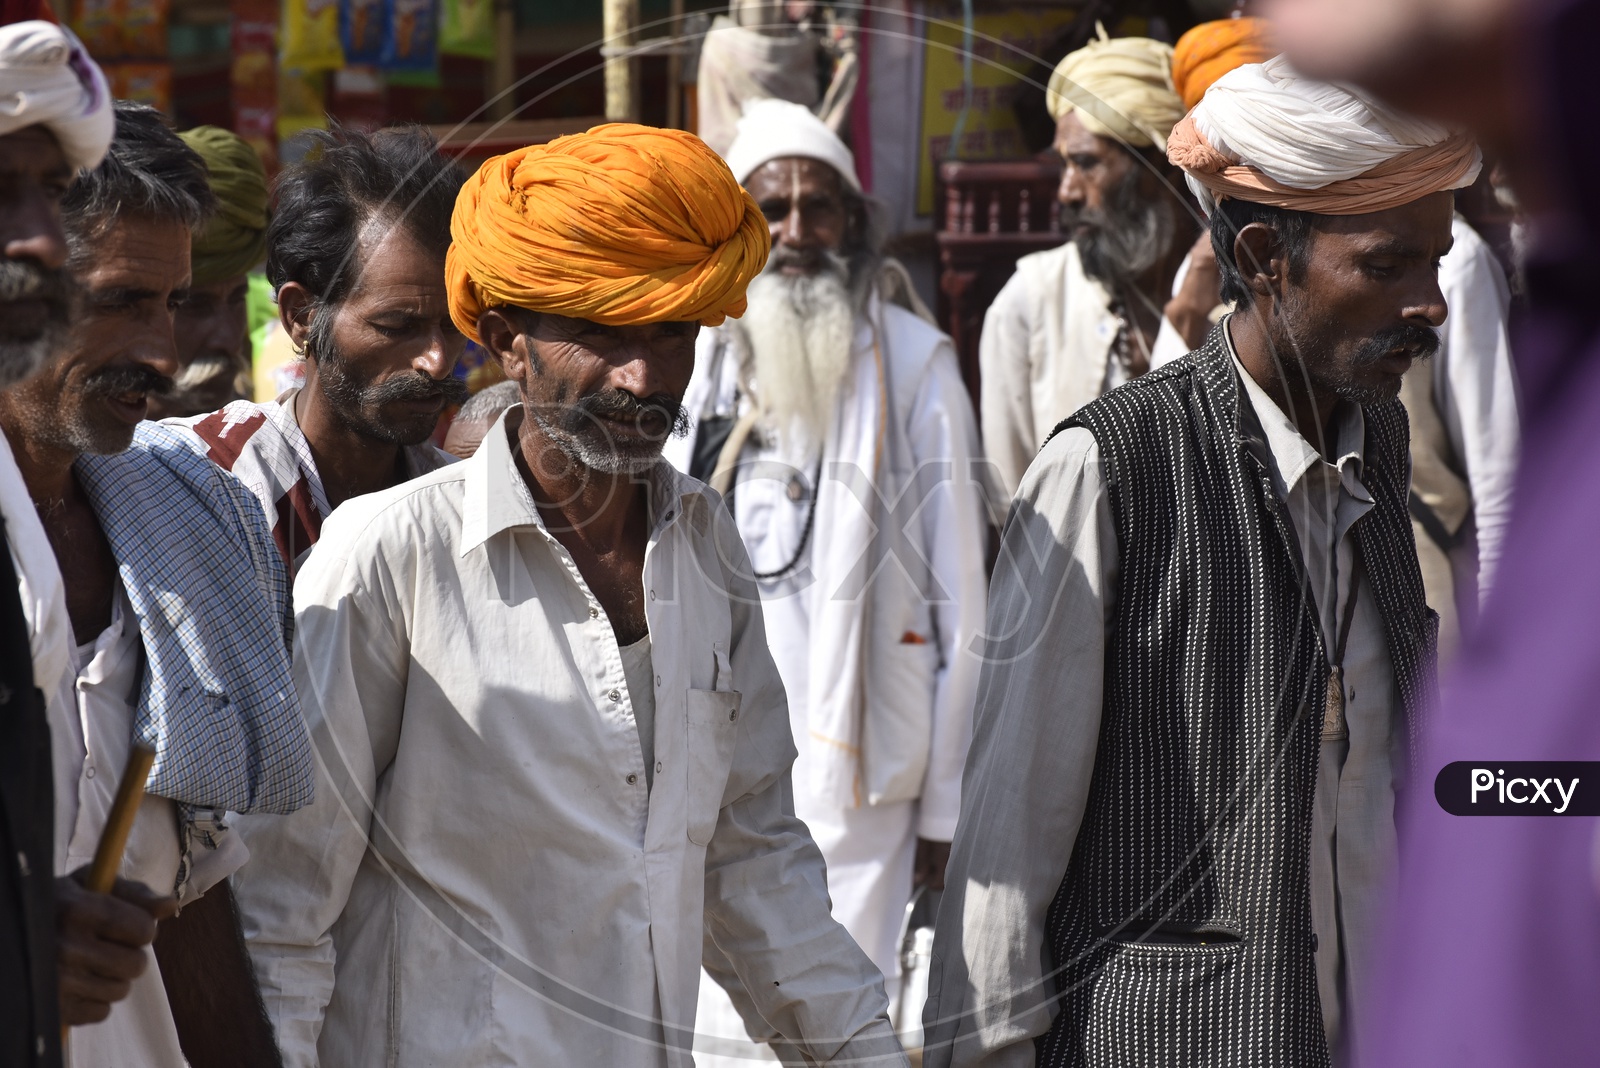 Rajasthani Men at Pushkar Camel Fair